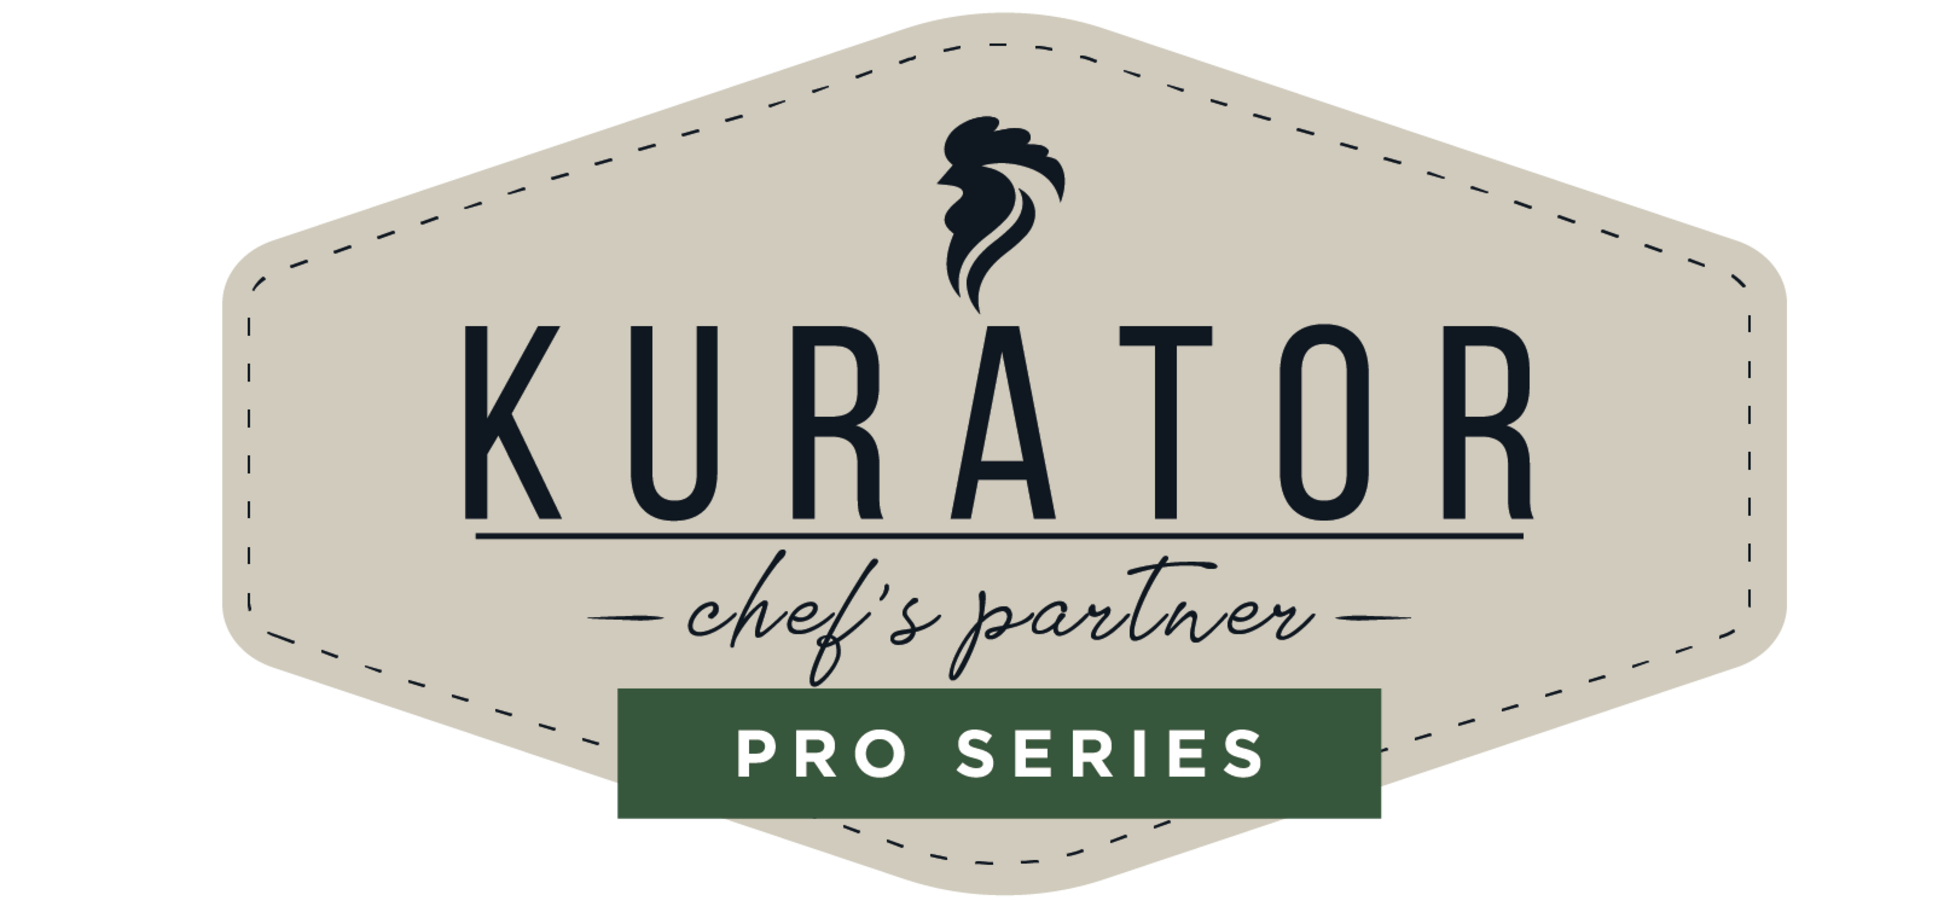 Агрохолдинг МХП предлагает рестораторам две новые линейки куриного мяса под брендом Kurator